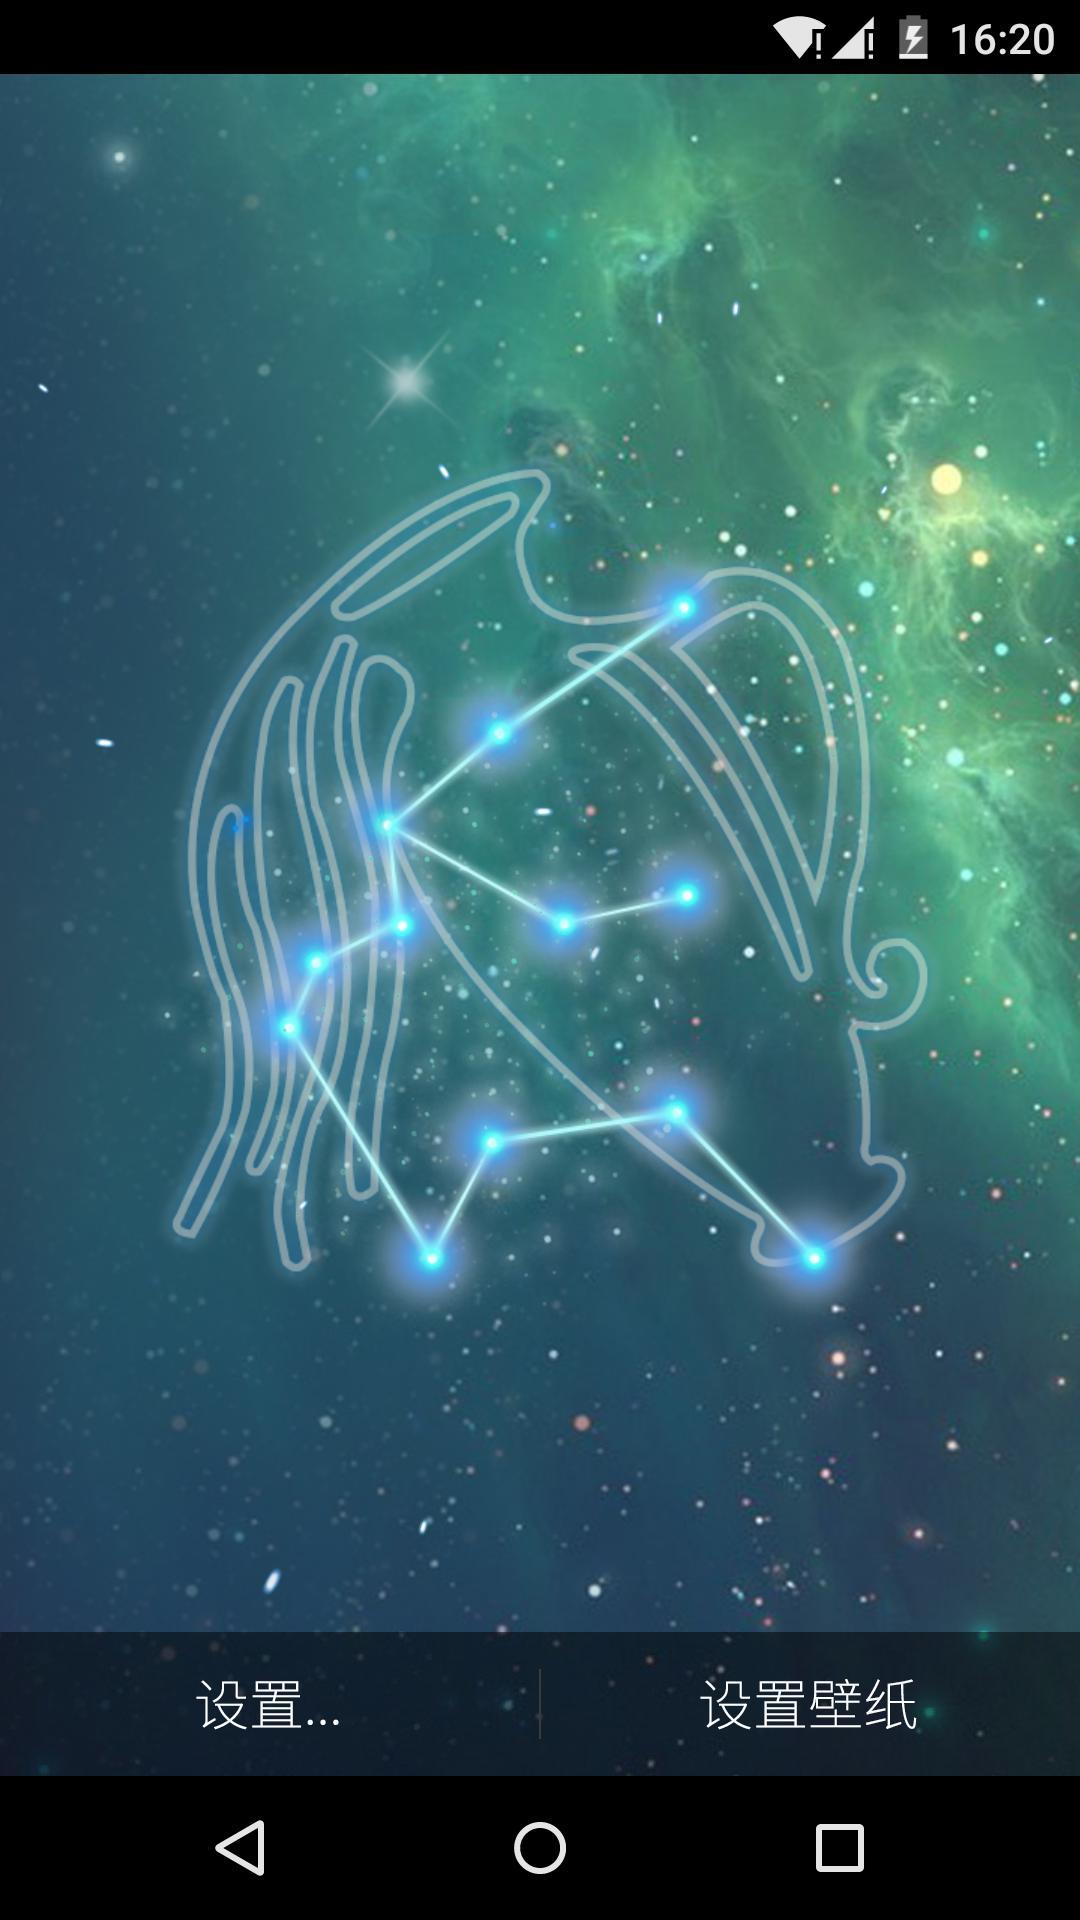 简约梦幻十二星座之水瓶座星空背景图片素材-编号33125020-图行天下